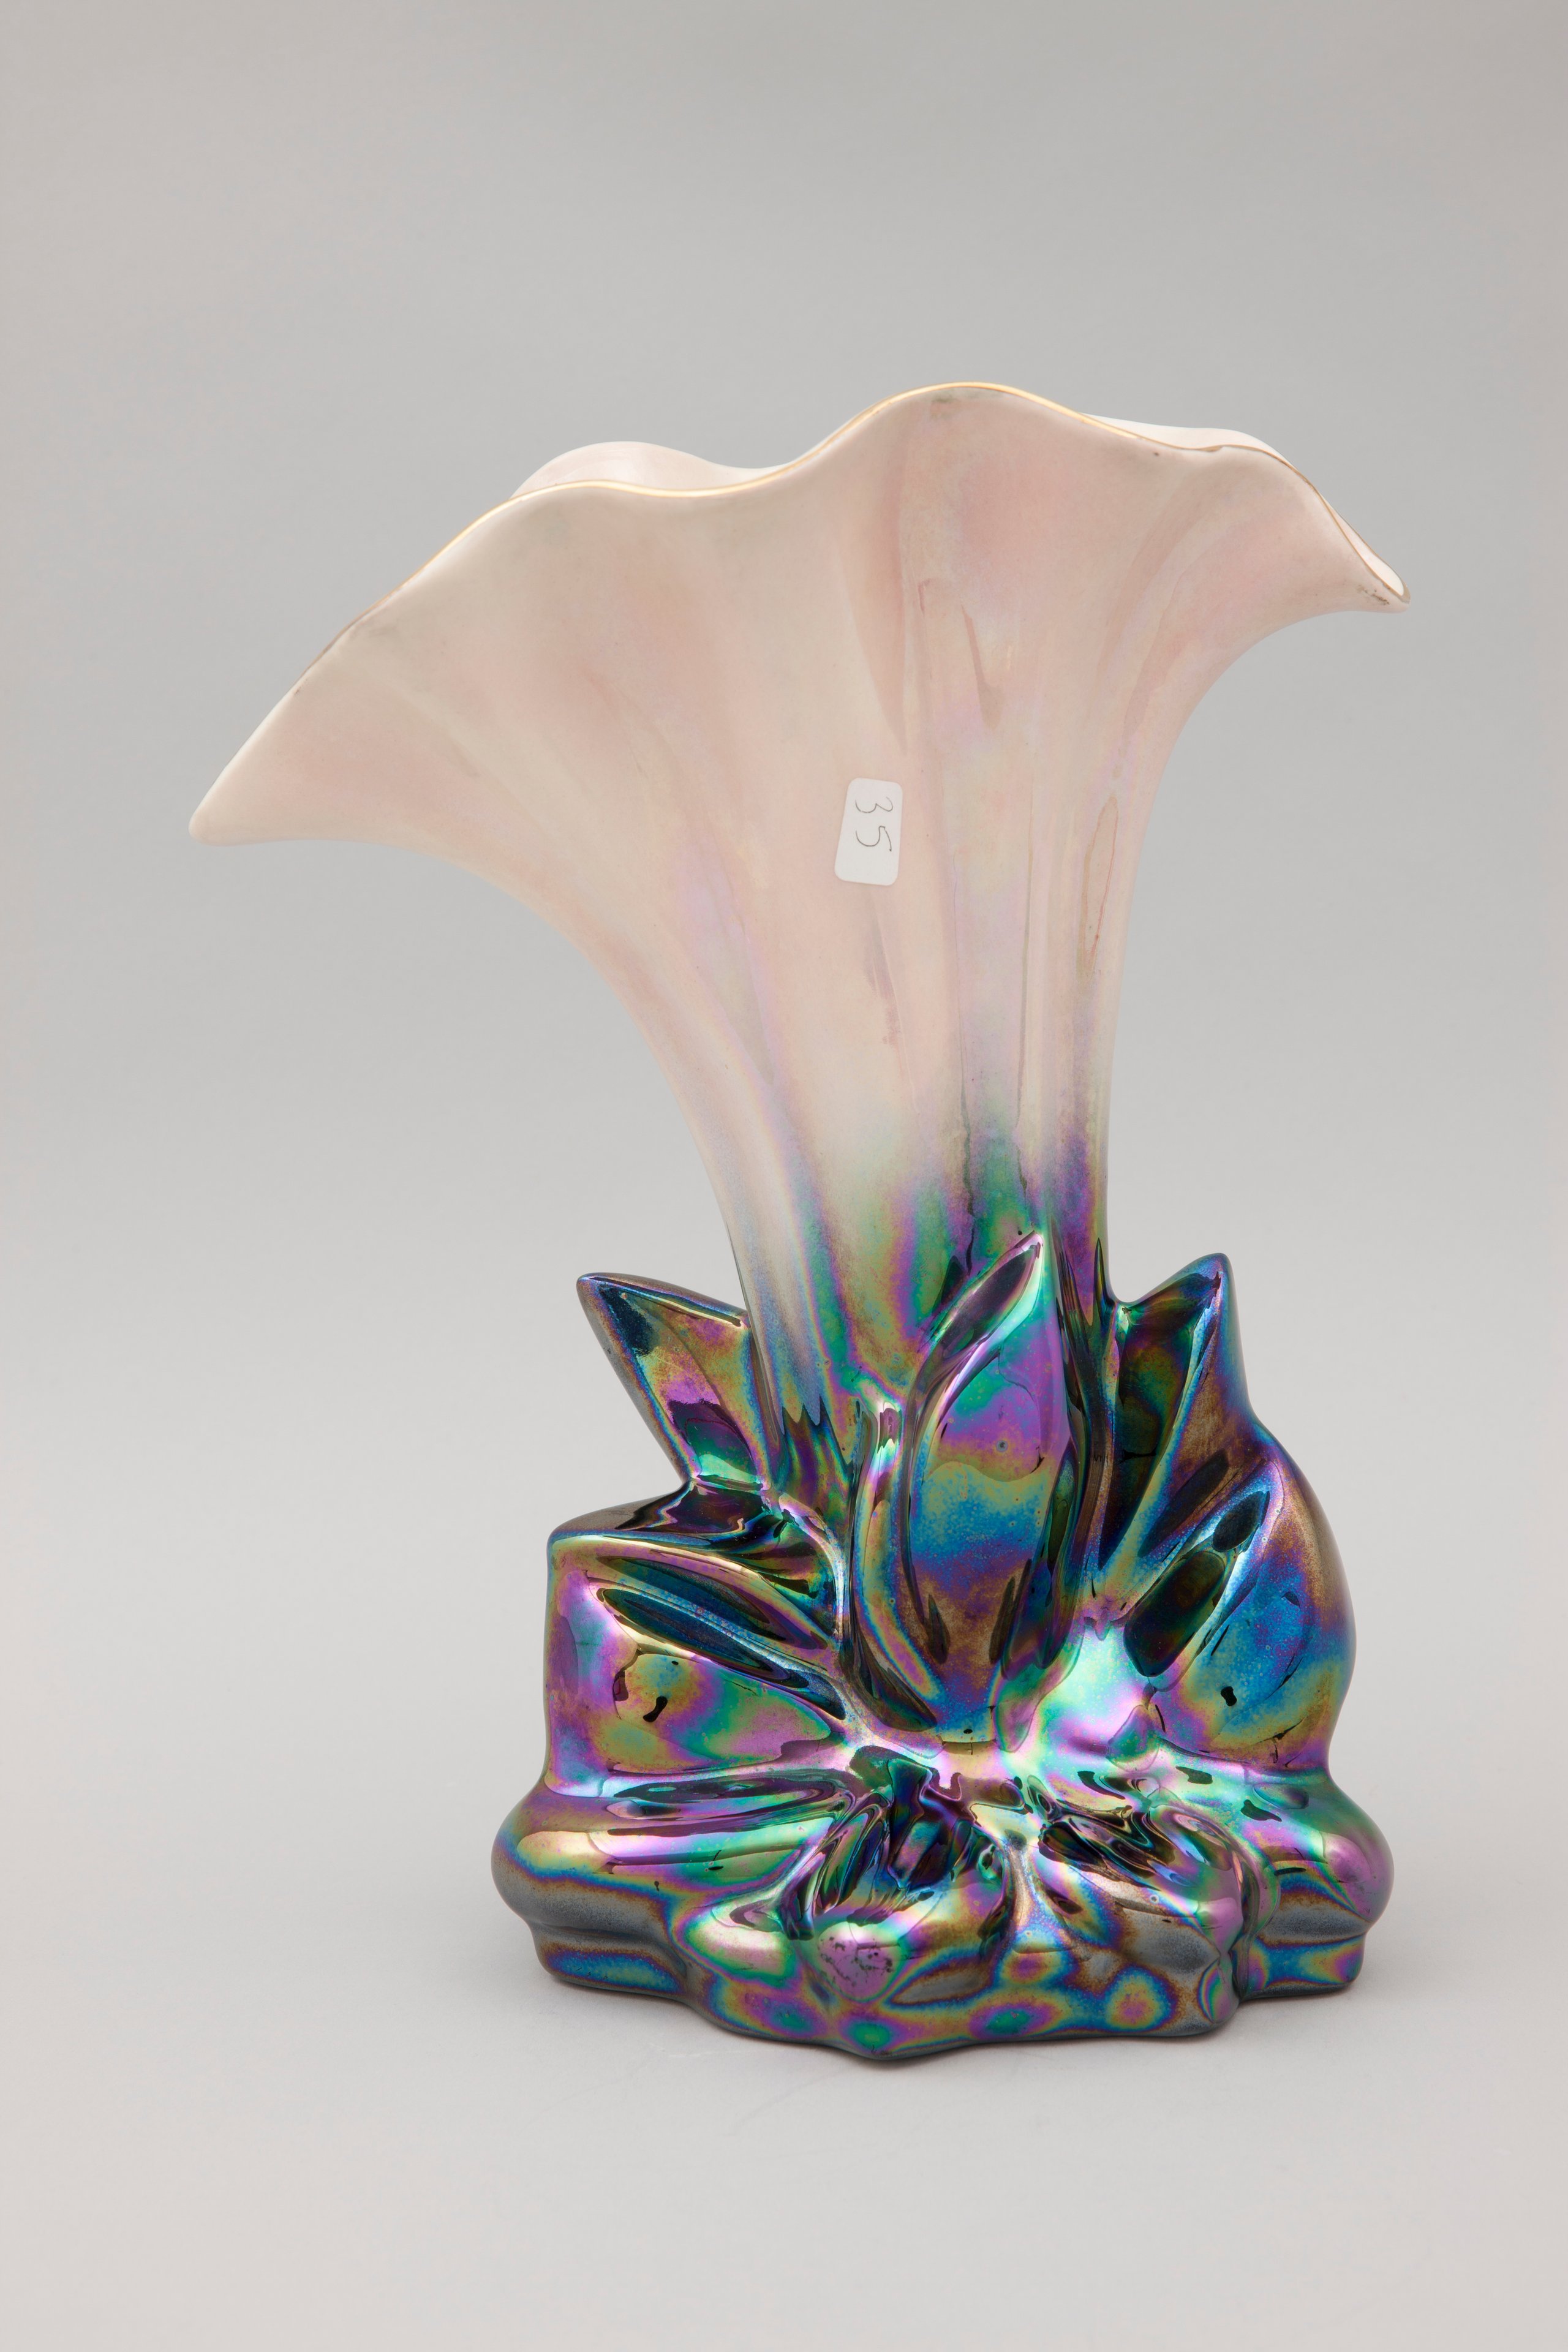 Earthenware vase